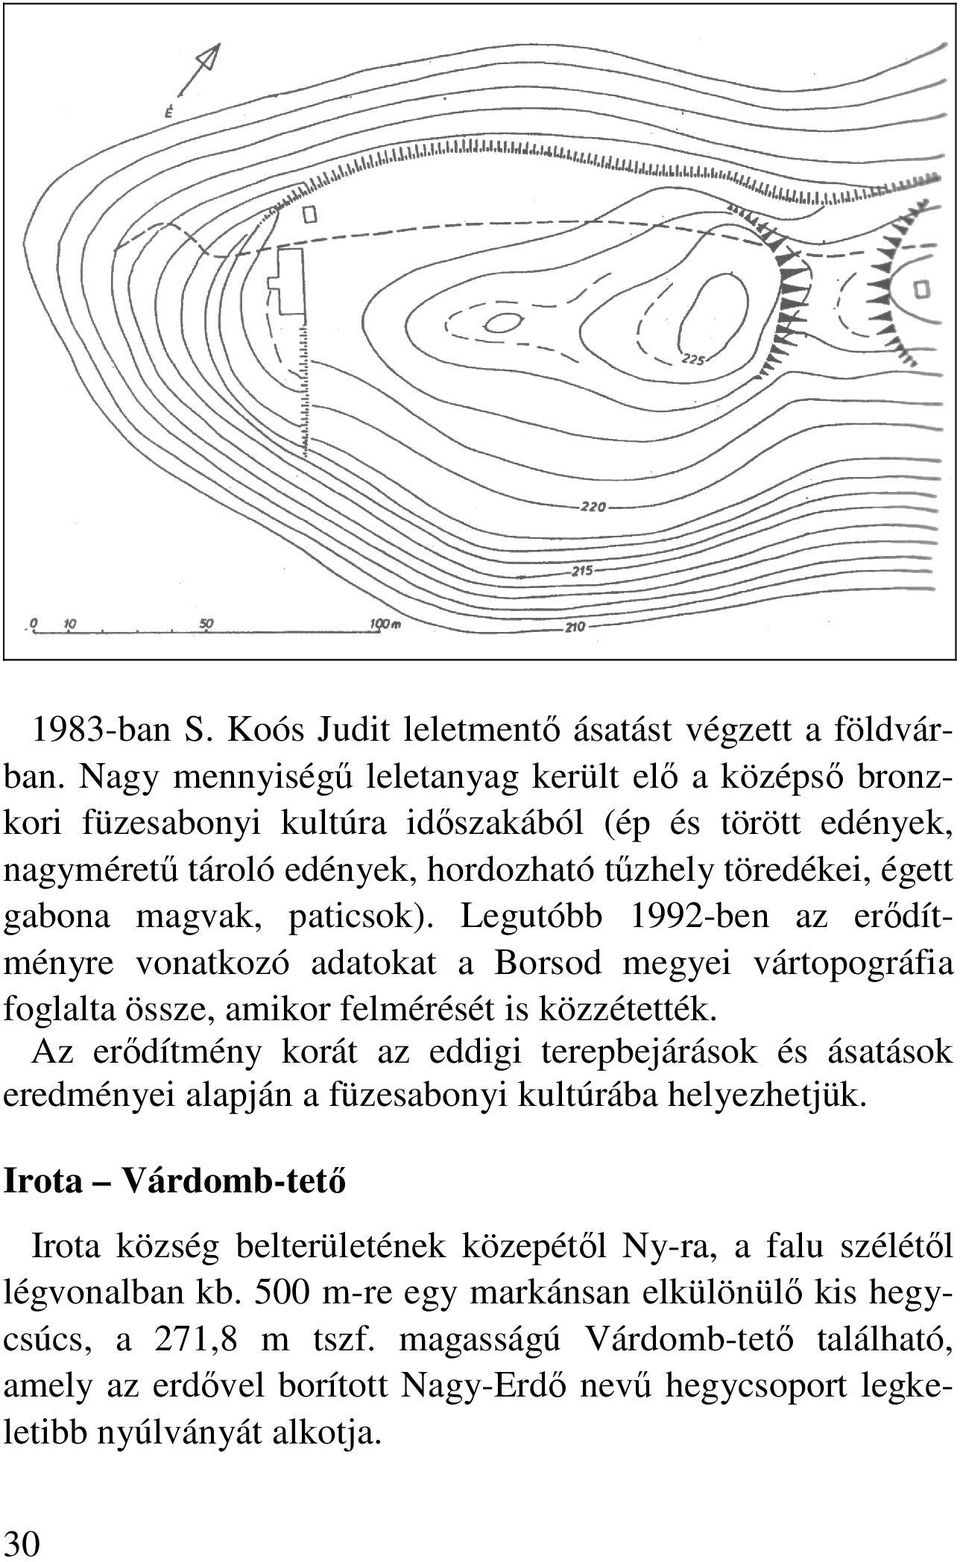 paticsok). Legutóbb 1992-ben az erıdítményre vonatkozó adatokat a Borsod megyei vártopográfia foglalta össze, amikor felmérését is közzétették.